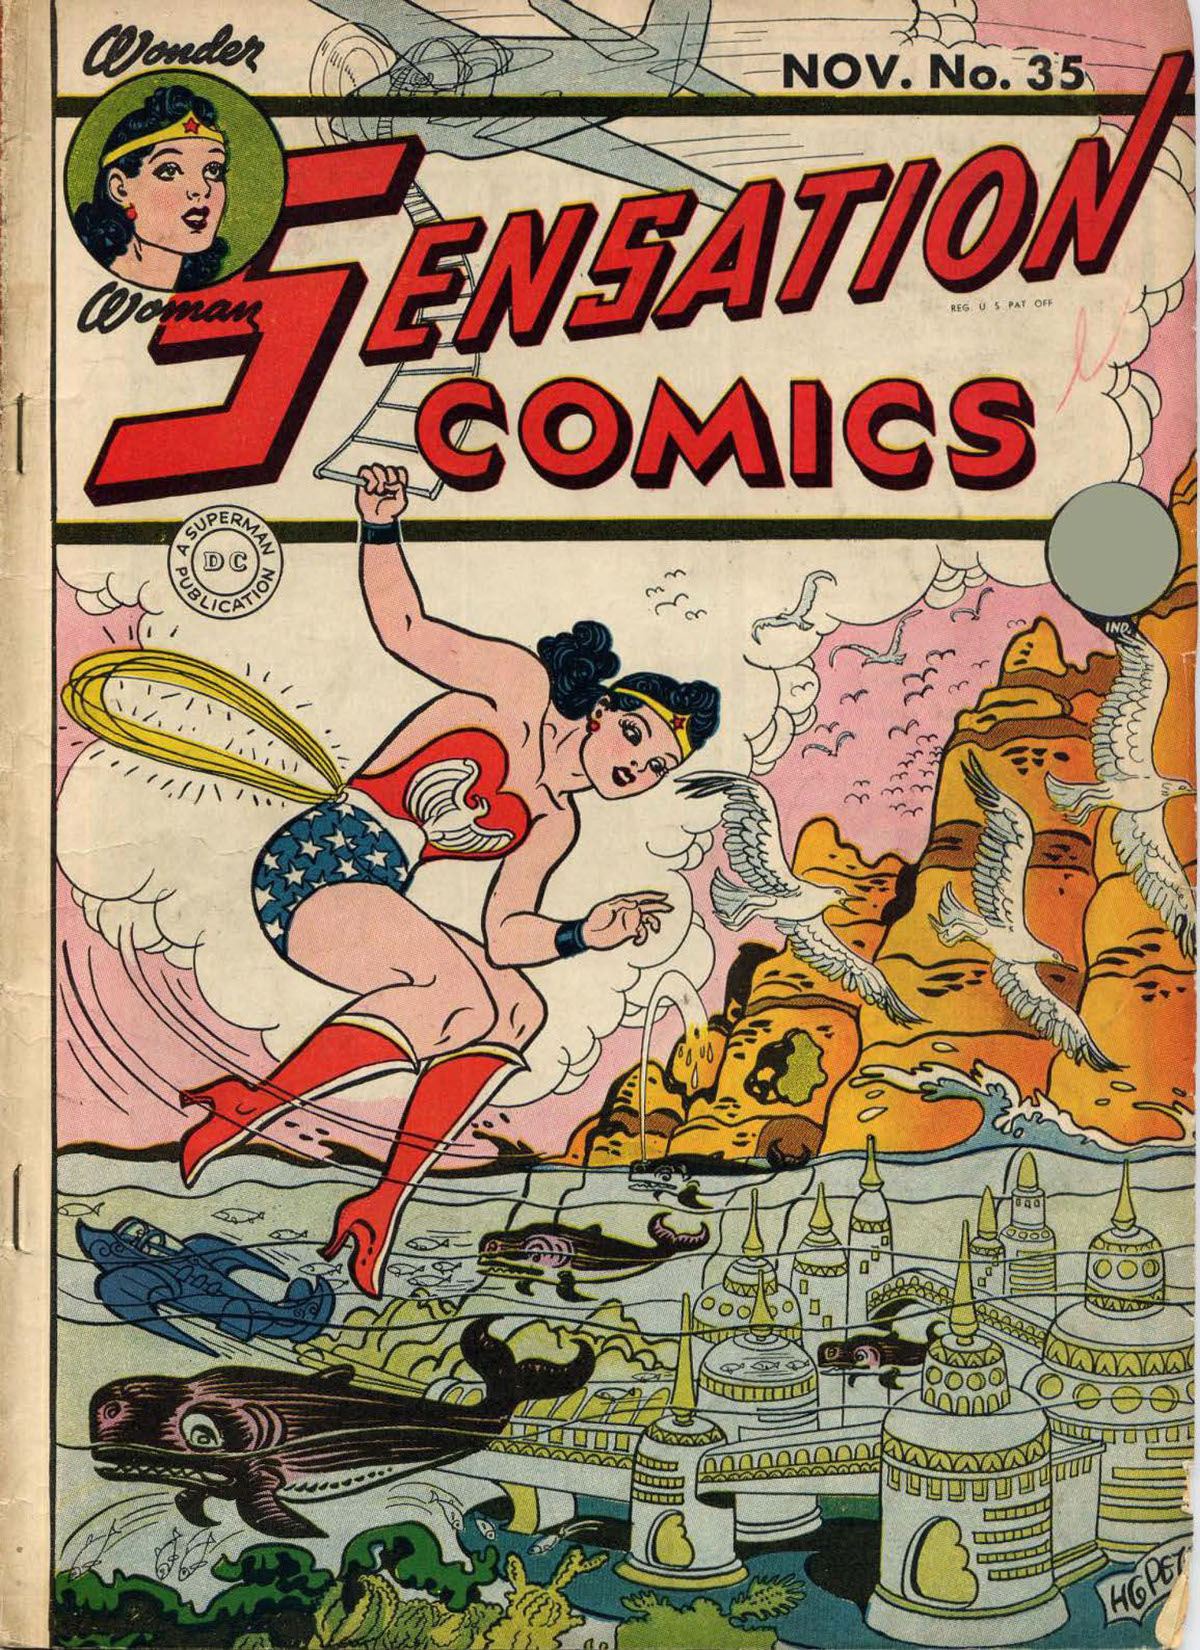 Sensation Comics #35 preview images